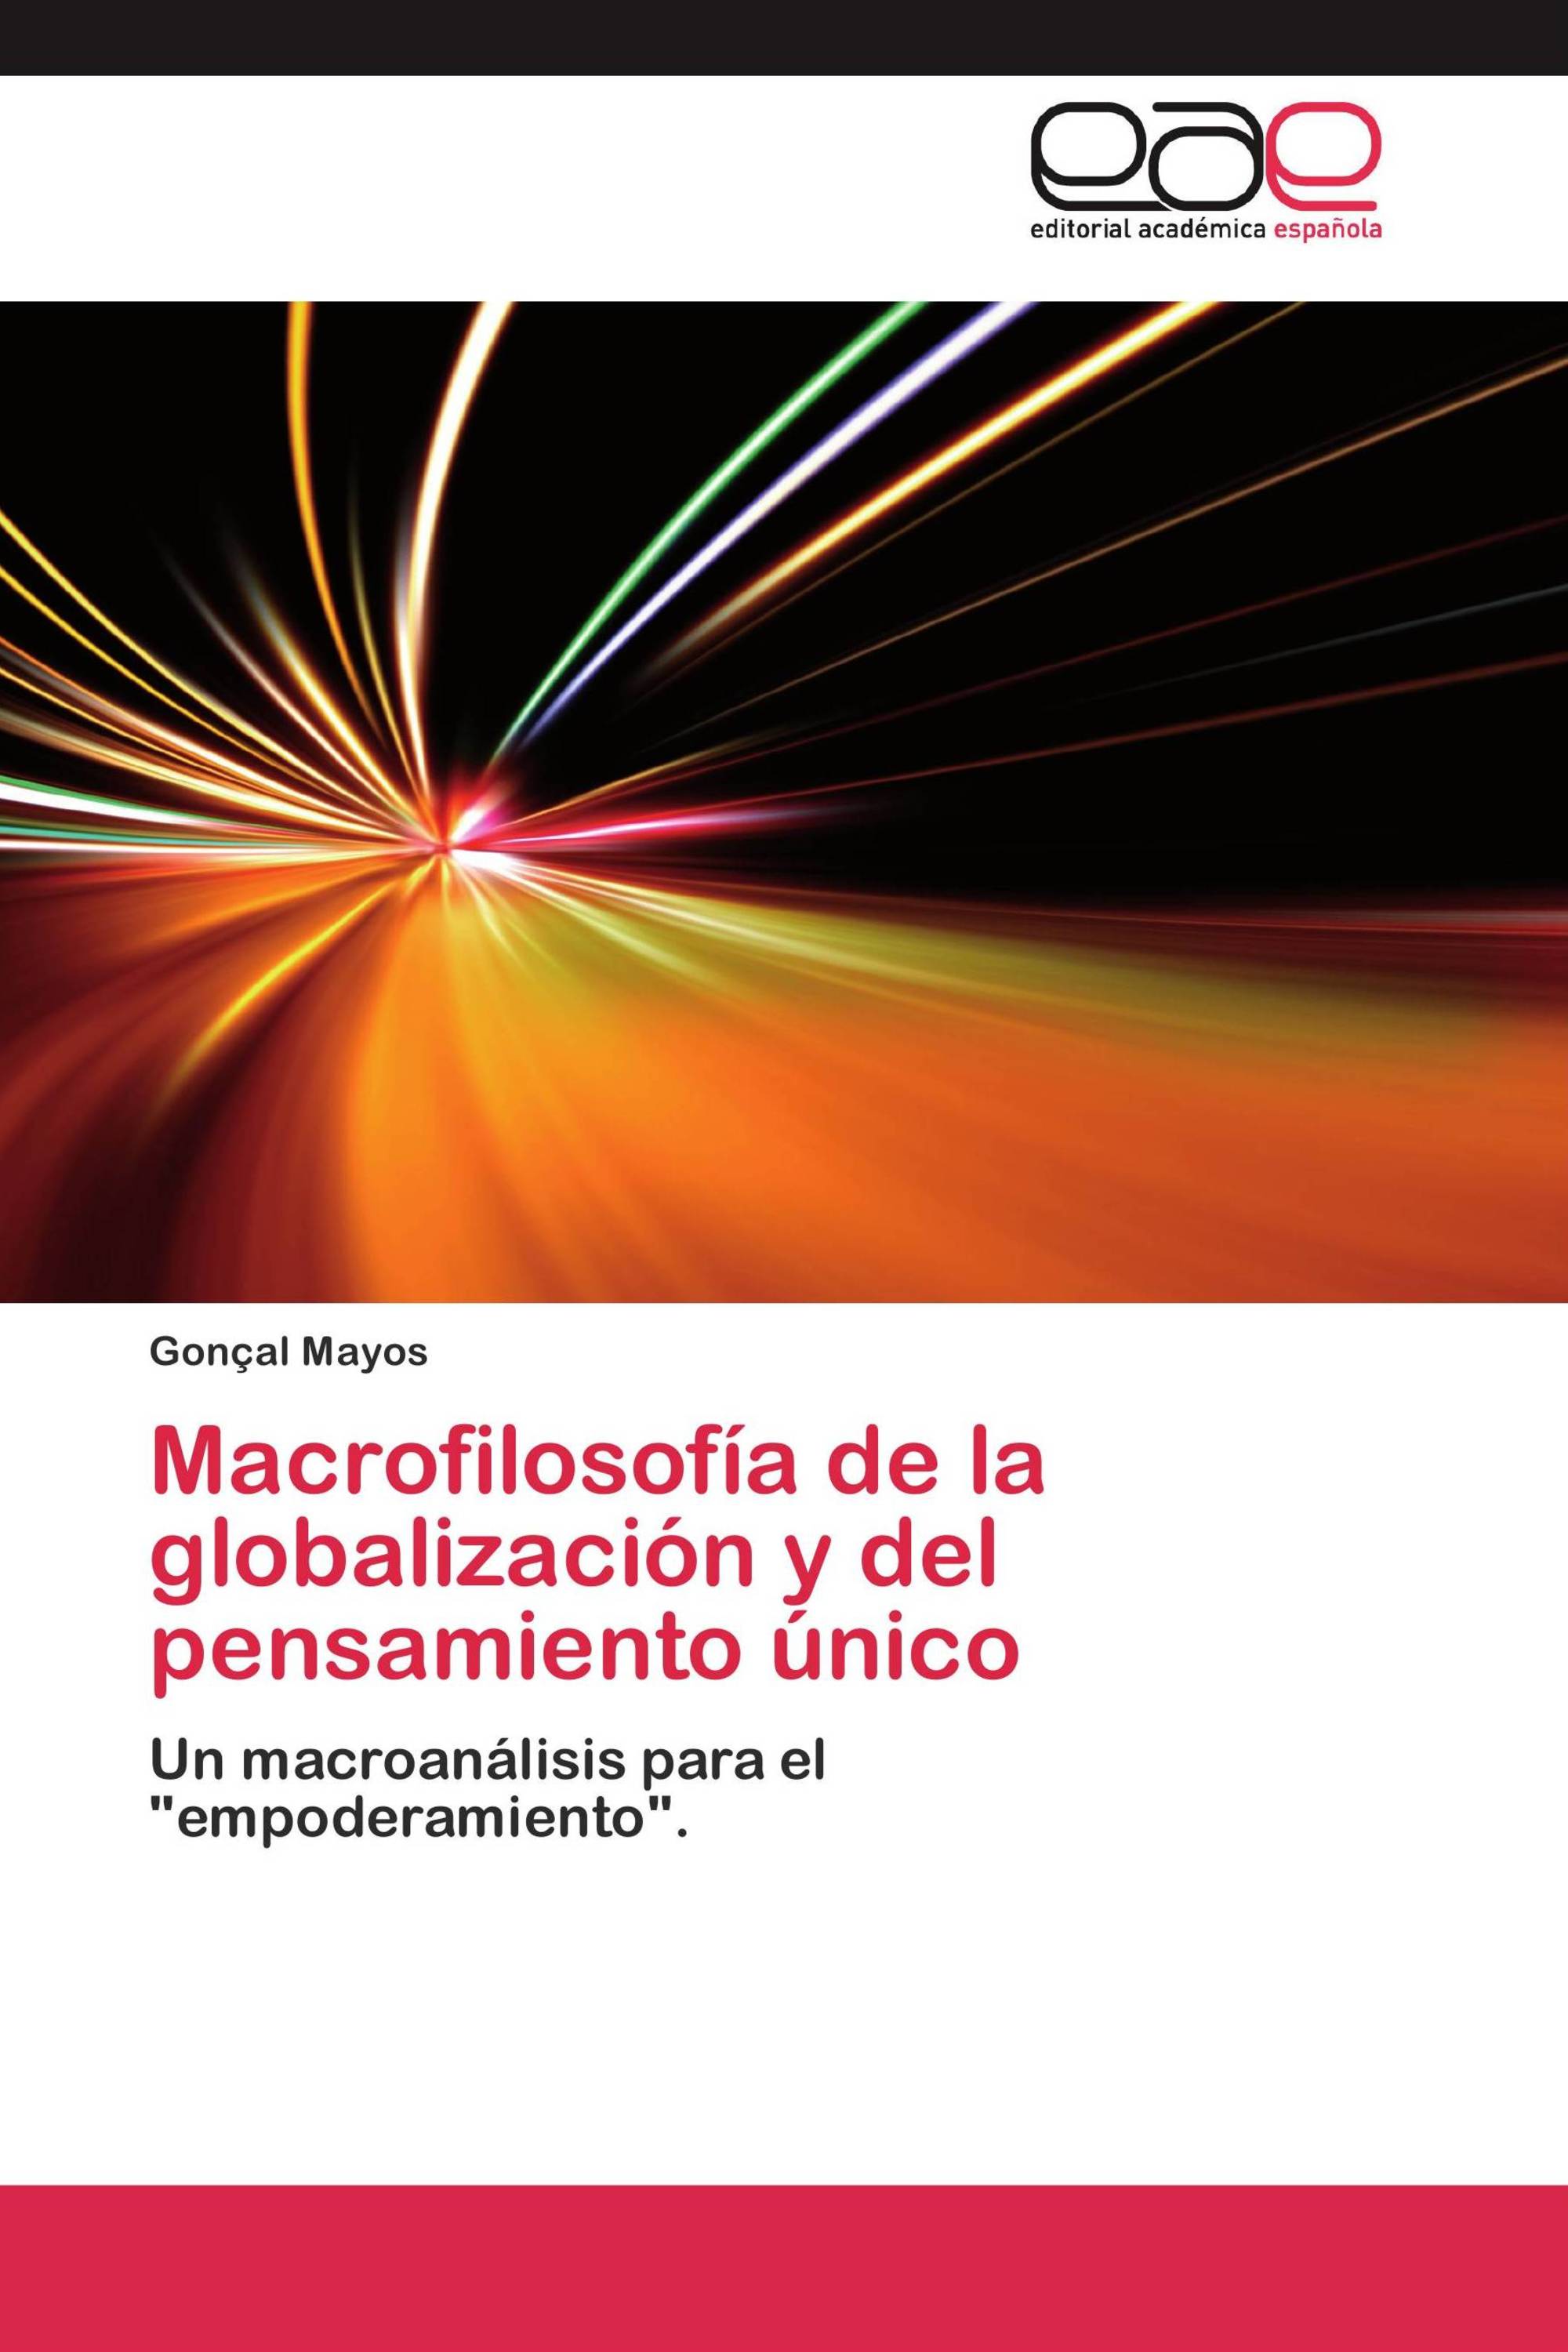 Macrofilosofía de la globalización y del pensamiento único